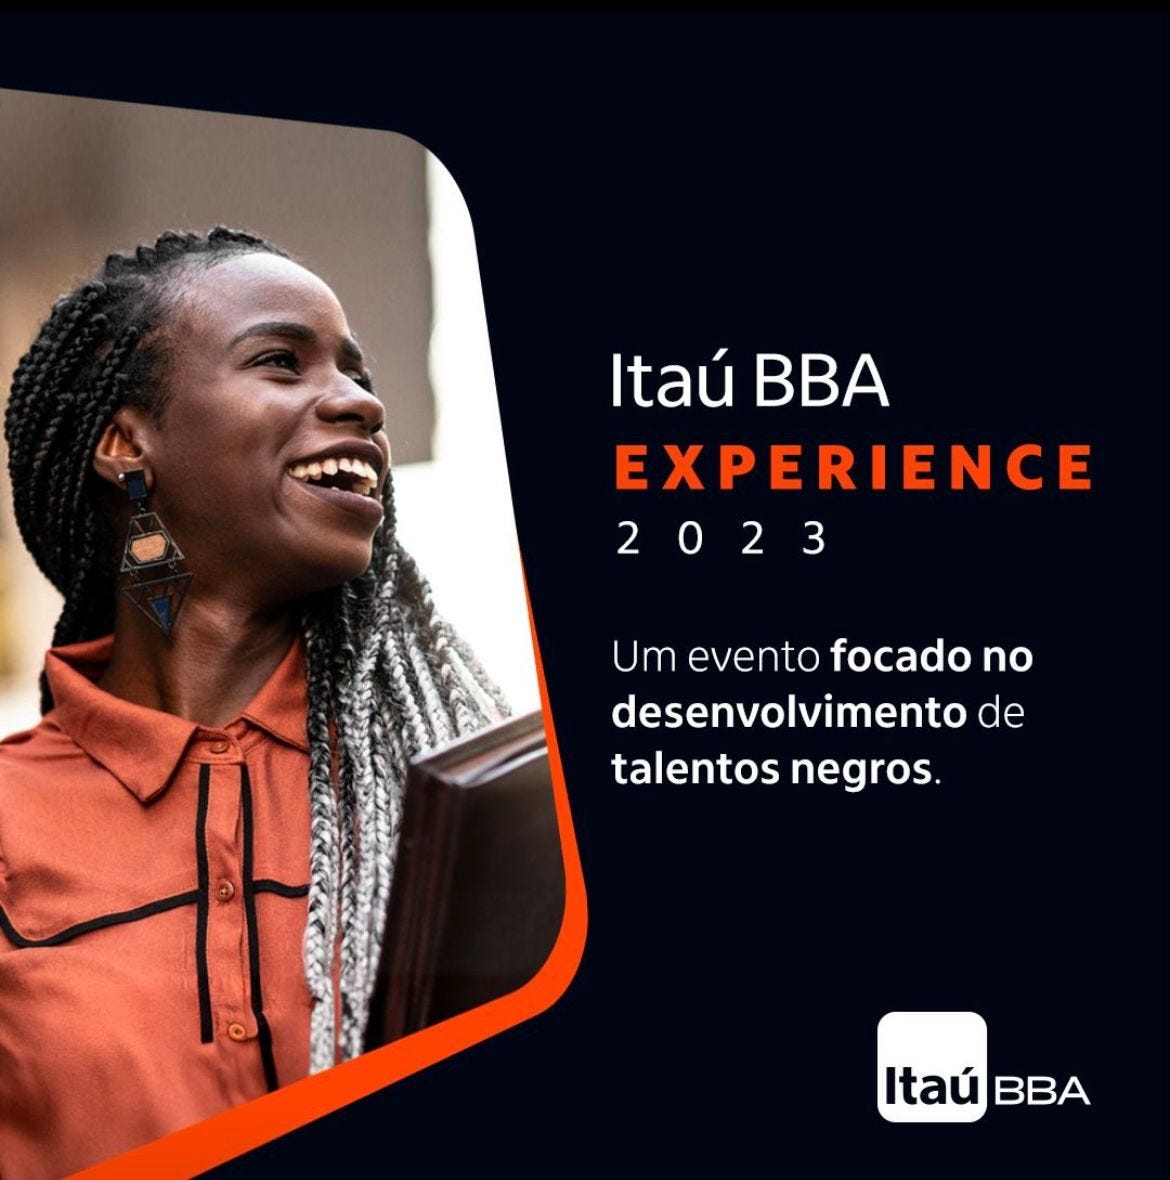 imagem de divulgação do evento Itaú BBA Experience 2023: Um evento focado no desenvolvimento de talentos negros. Fundo preto com o texto em branco e laranja e uma foto de uma mulher negra sorrindo na esquerda